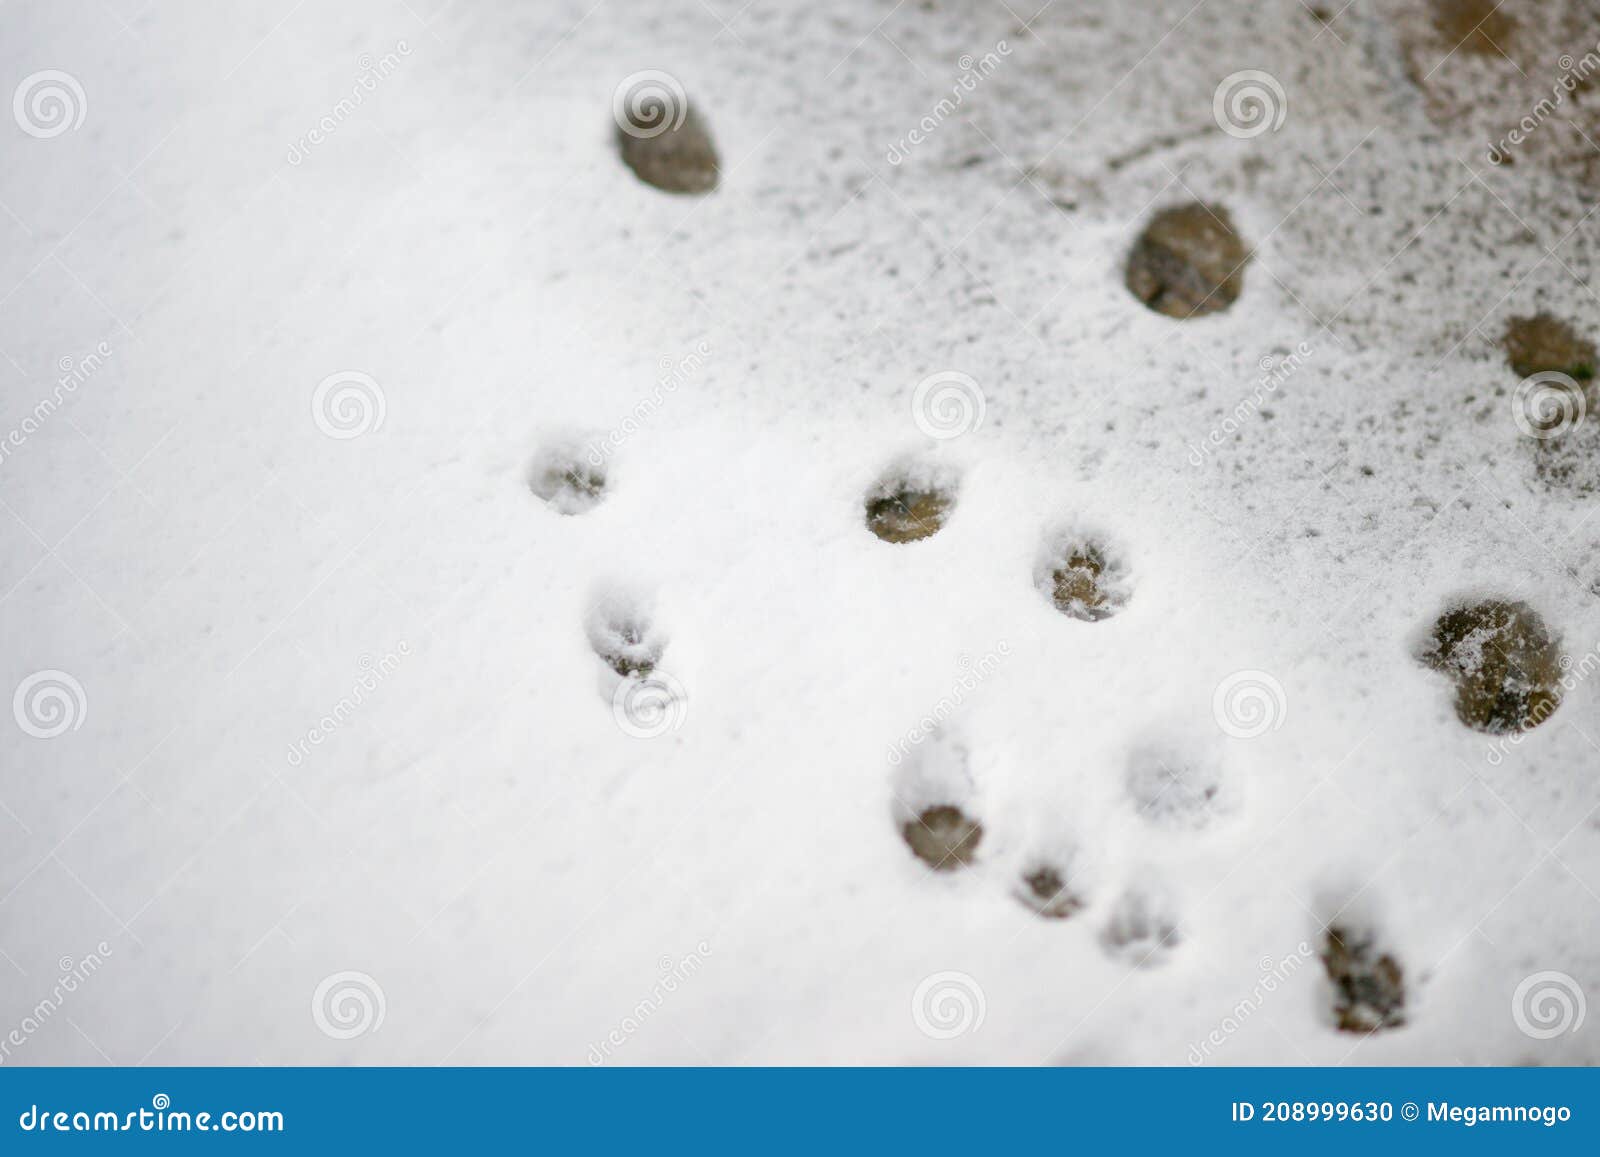 壁纸 : 猫, 雪, 冬季, 动物, 宠物, 摄影 1706x1138 - Heroine2000 - 2097173 - 电脑桌面壁纸 ...